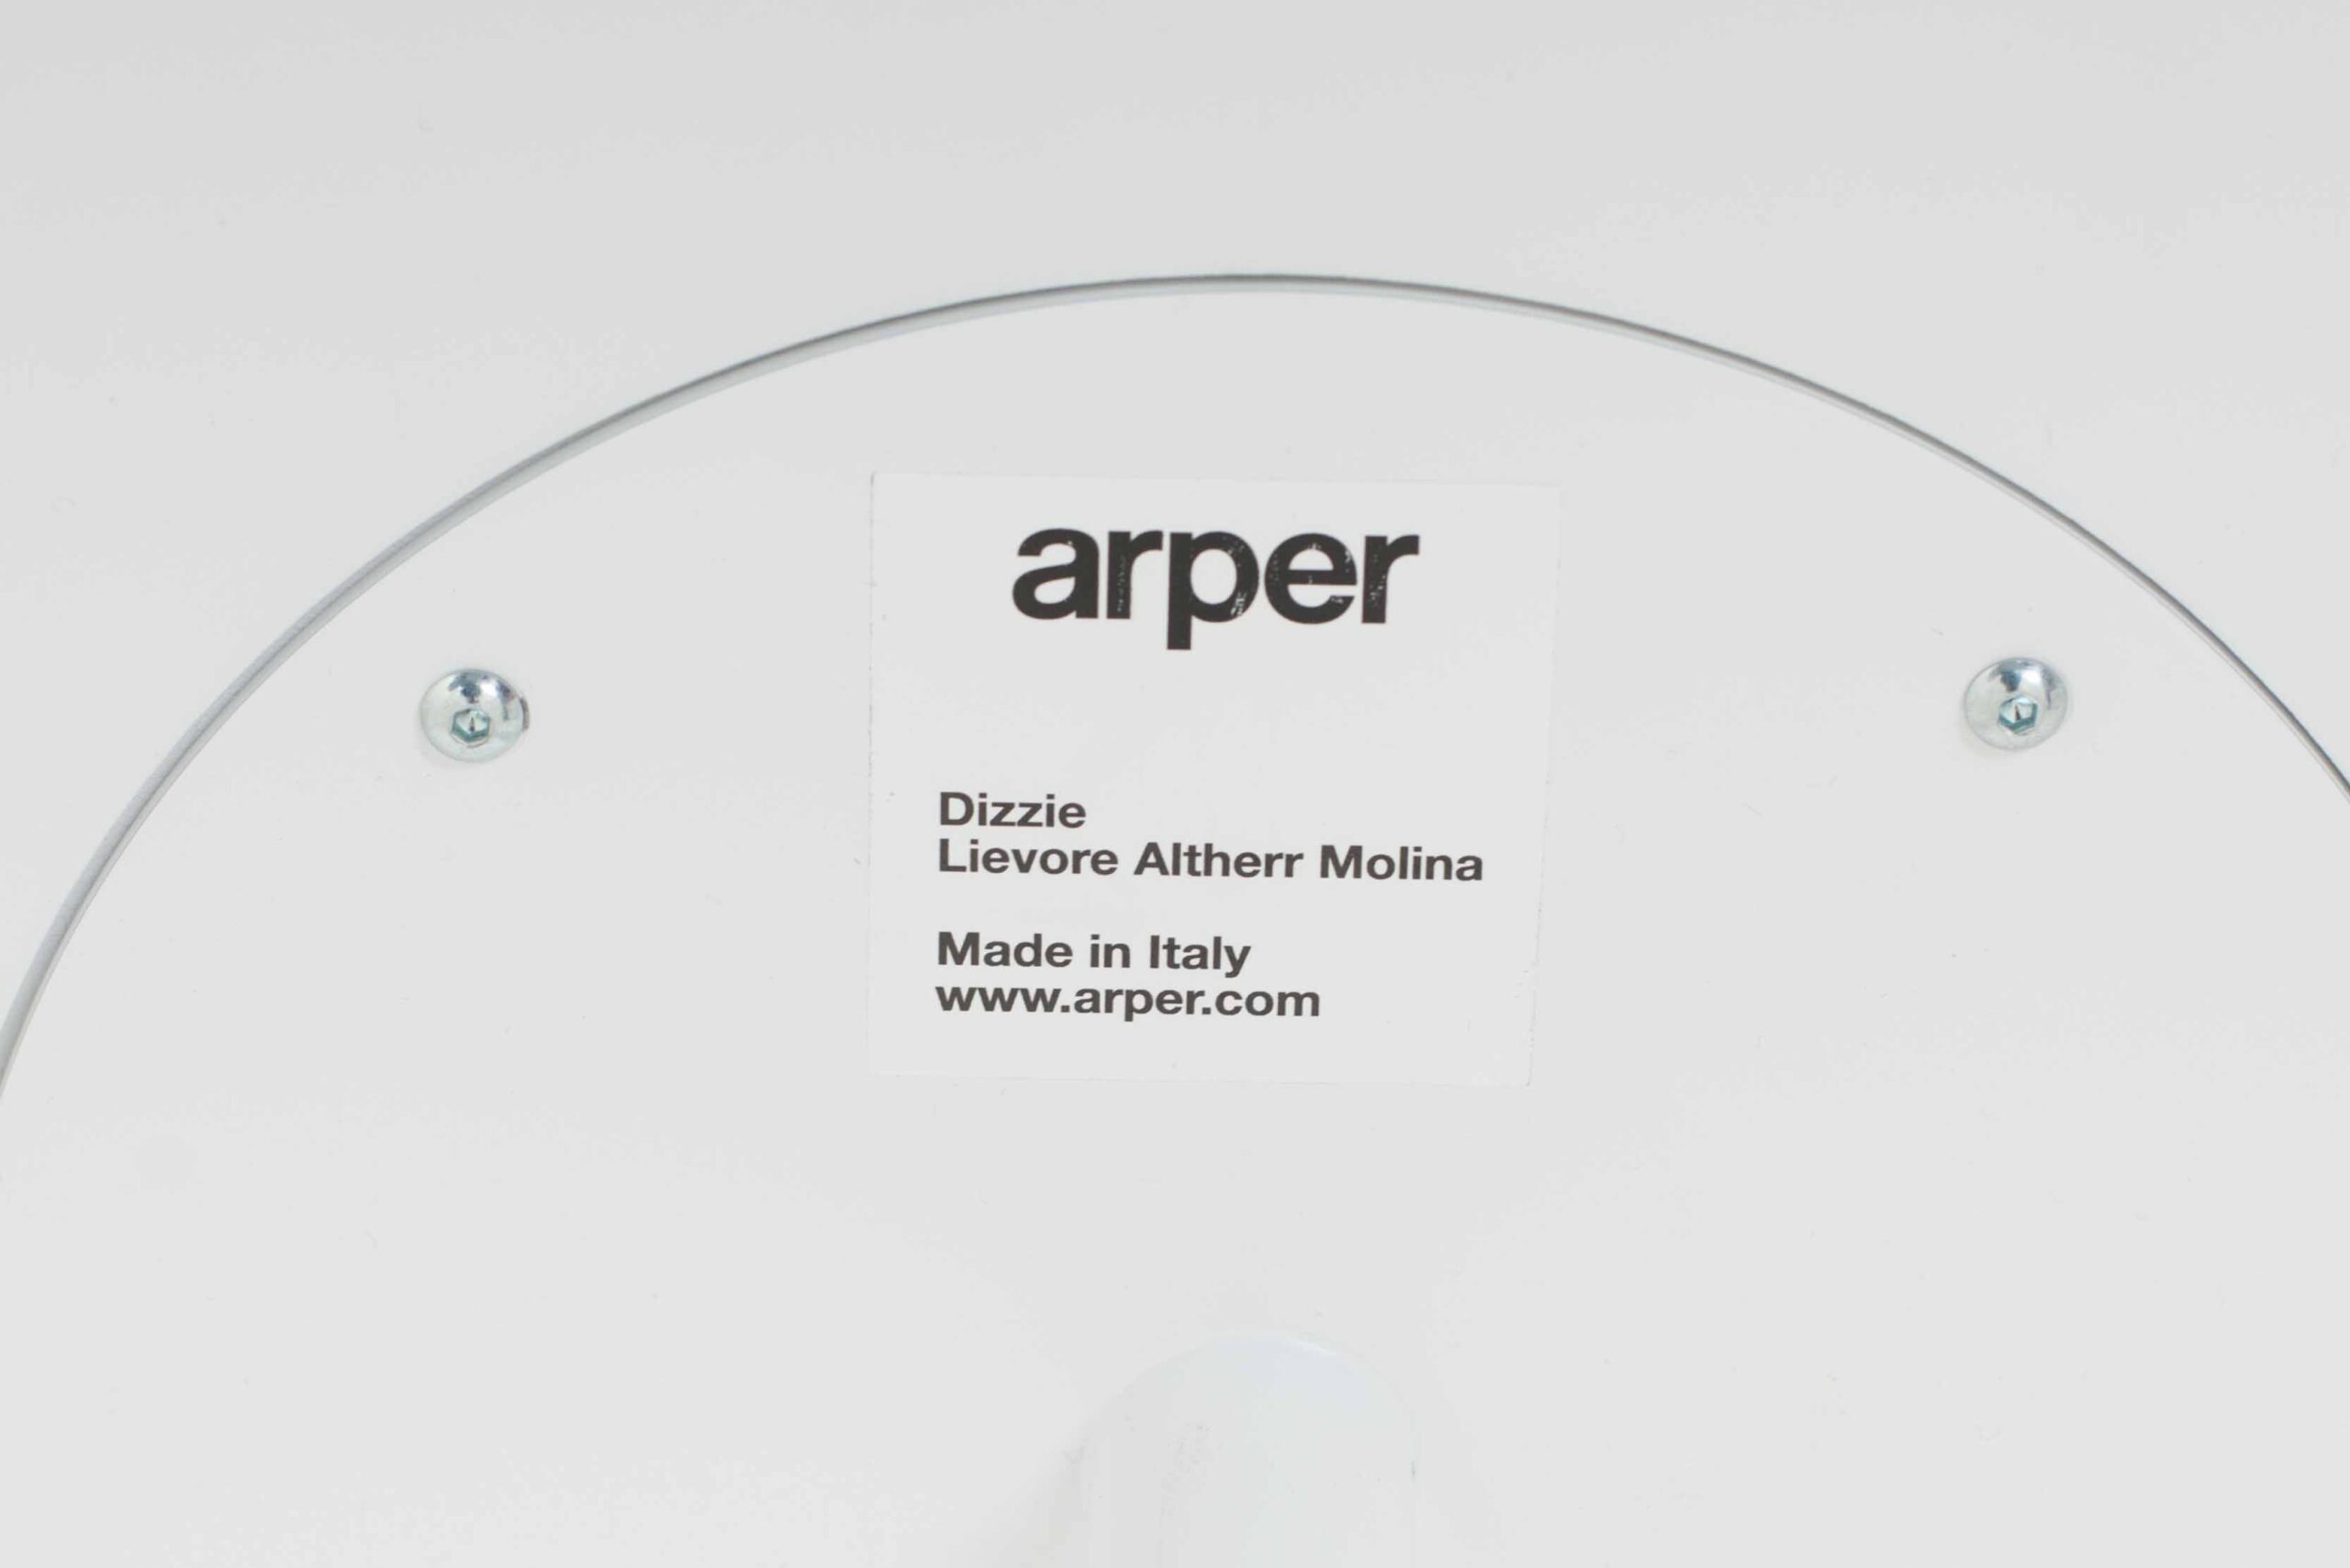 Arper Beistelltisch Dizzie von Designstudio Lievore Altherr Molina-5